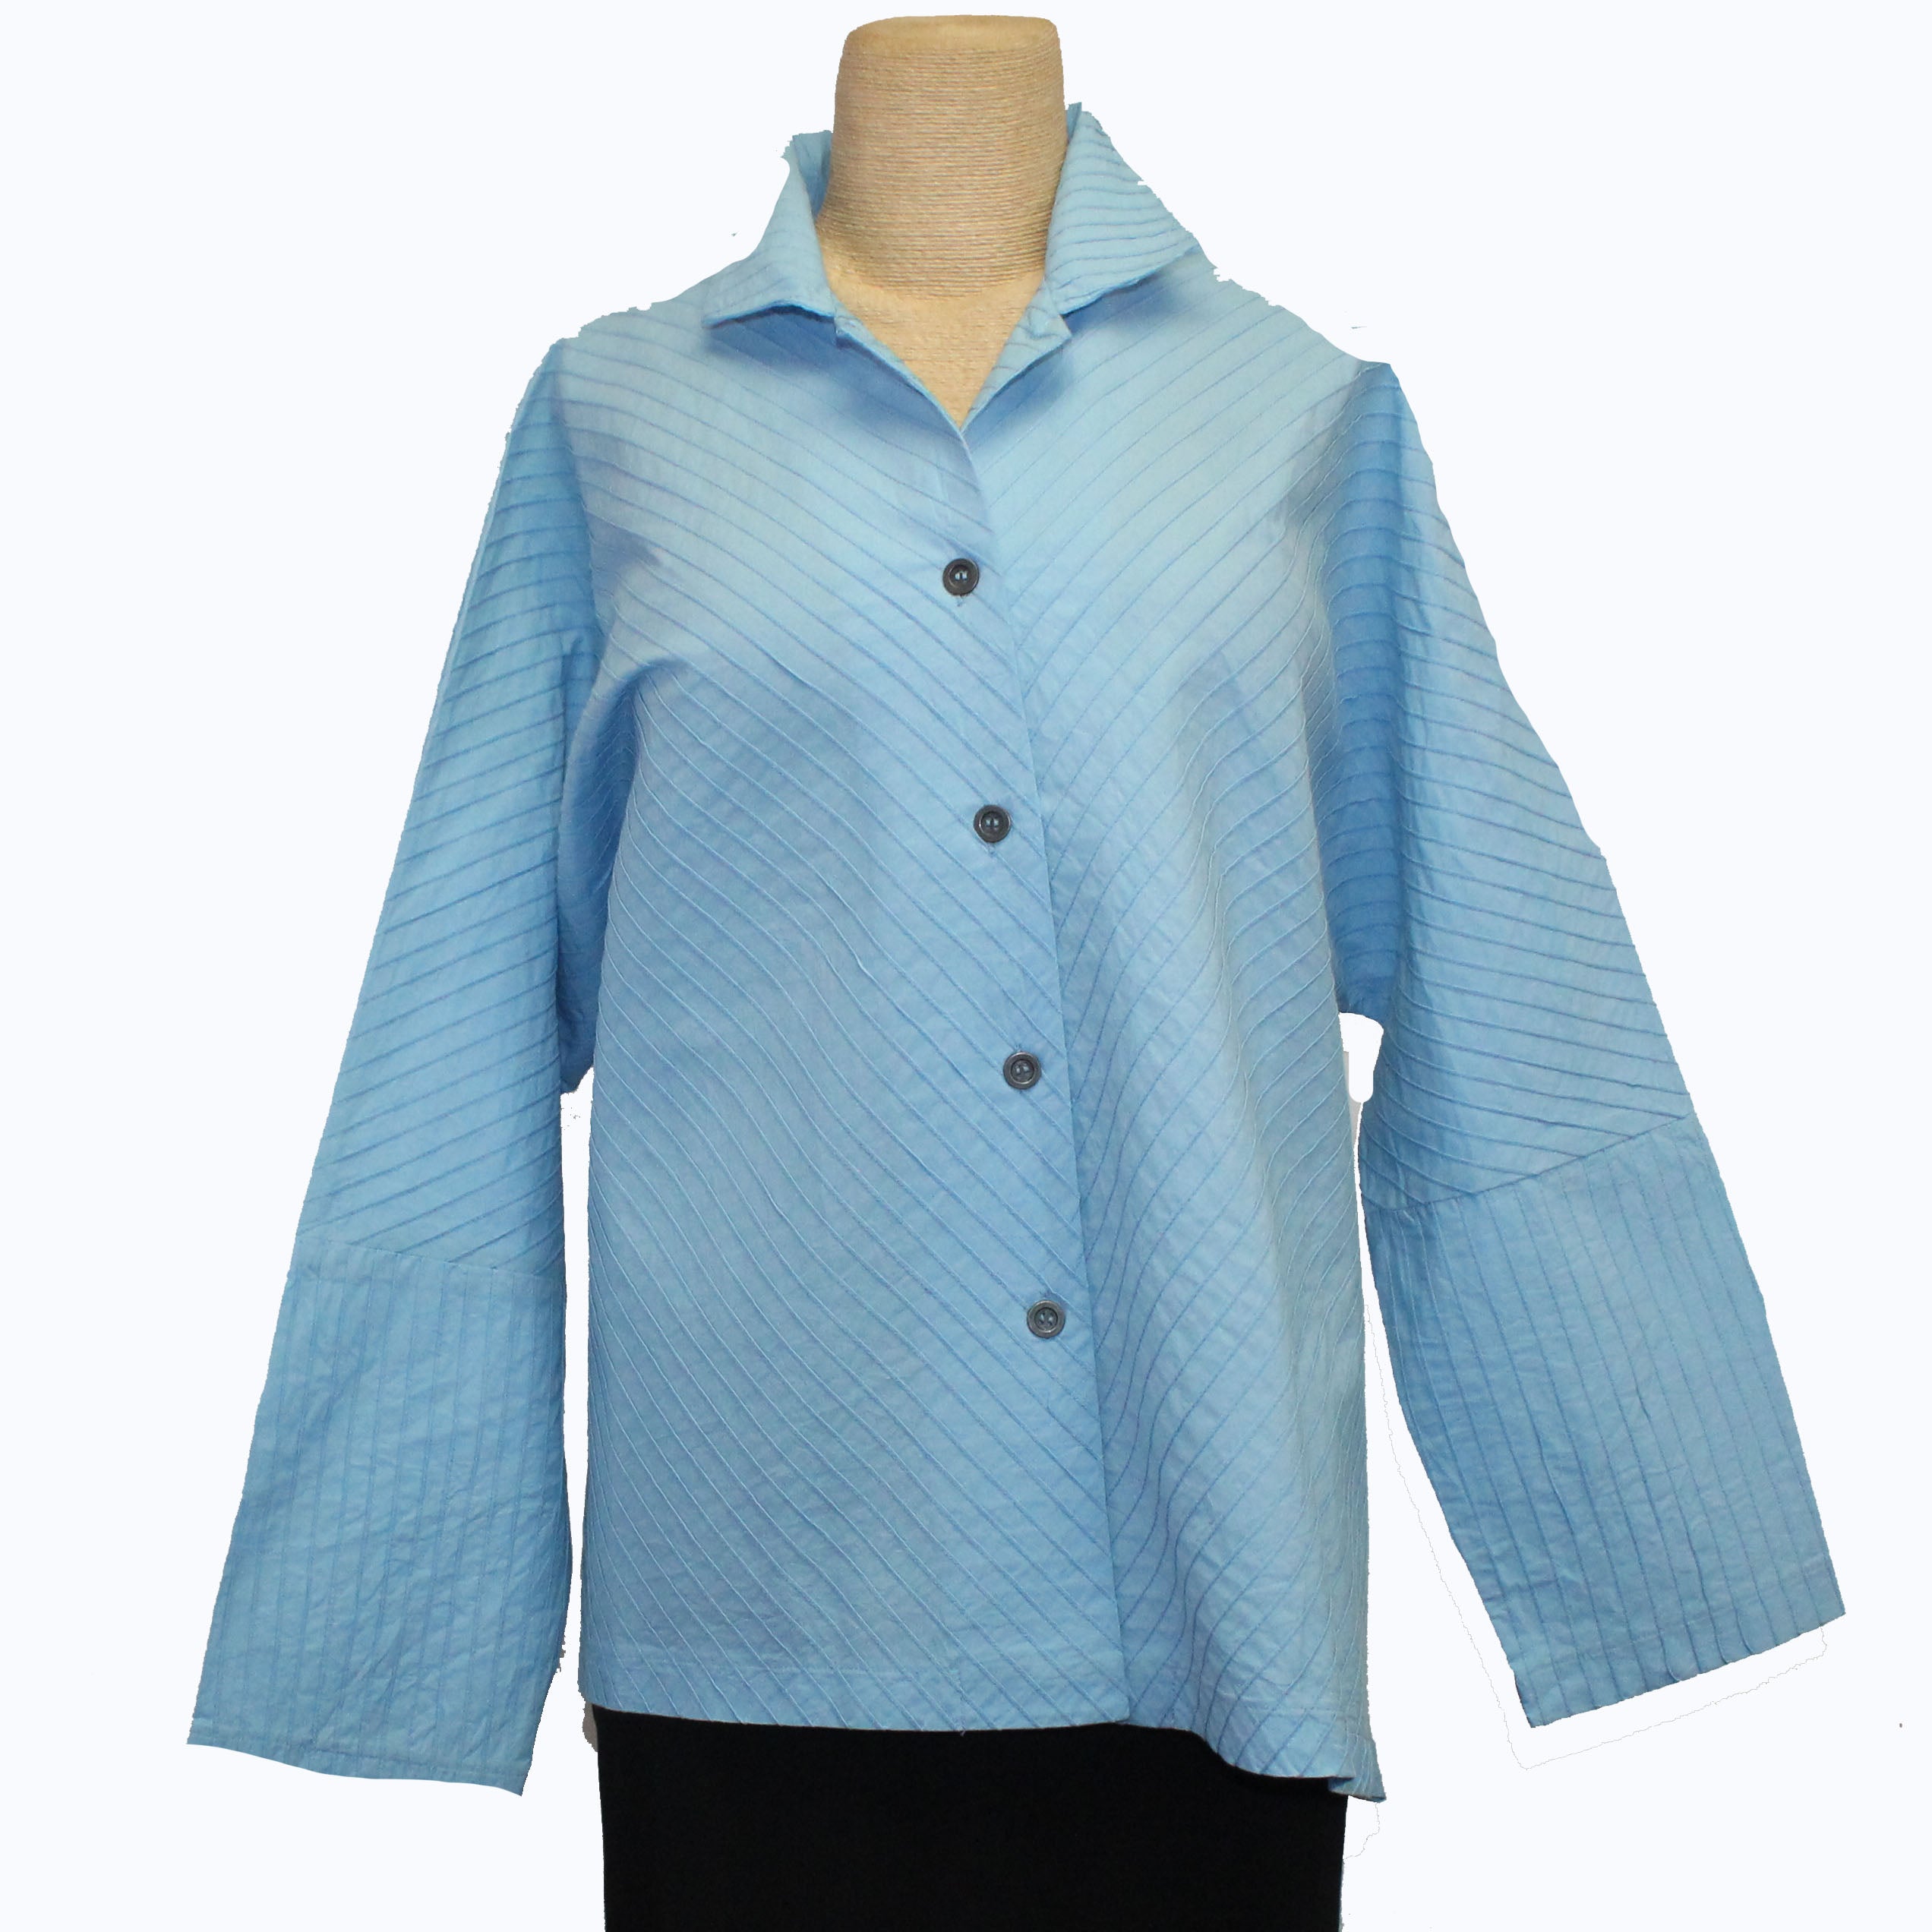 M Square Shirt, Mandarin Swing, Pintuck, Sky Blue M, L & XL